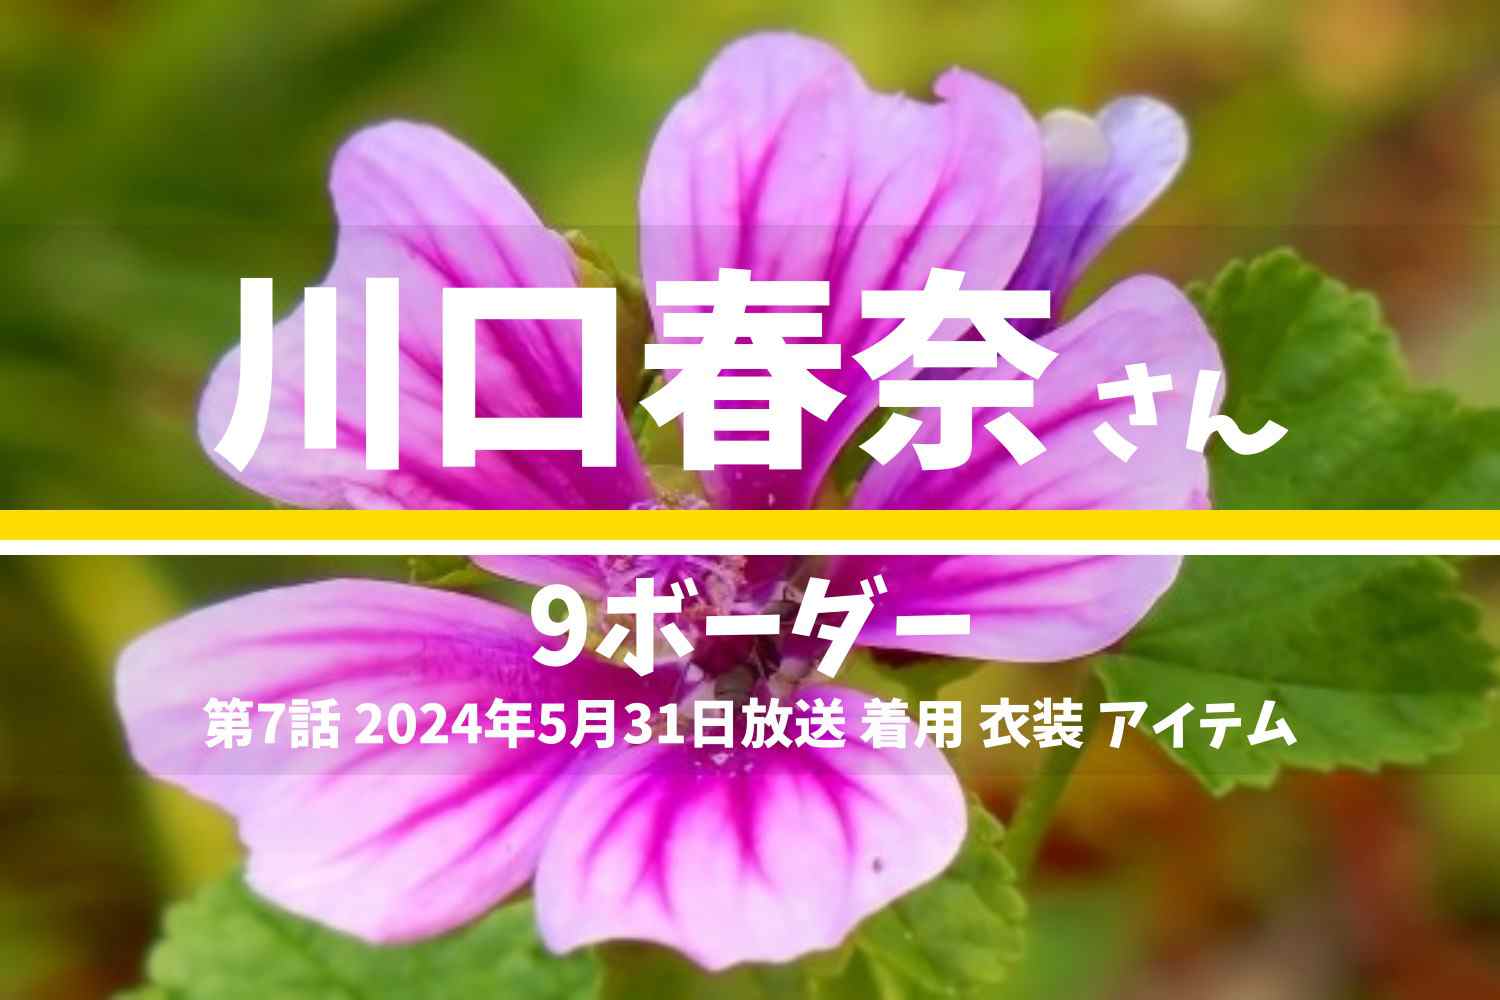 9ボーダー 川口春奈さん テレビドラマ 衣装 2024年5月31日放送